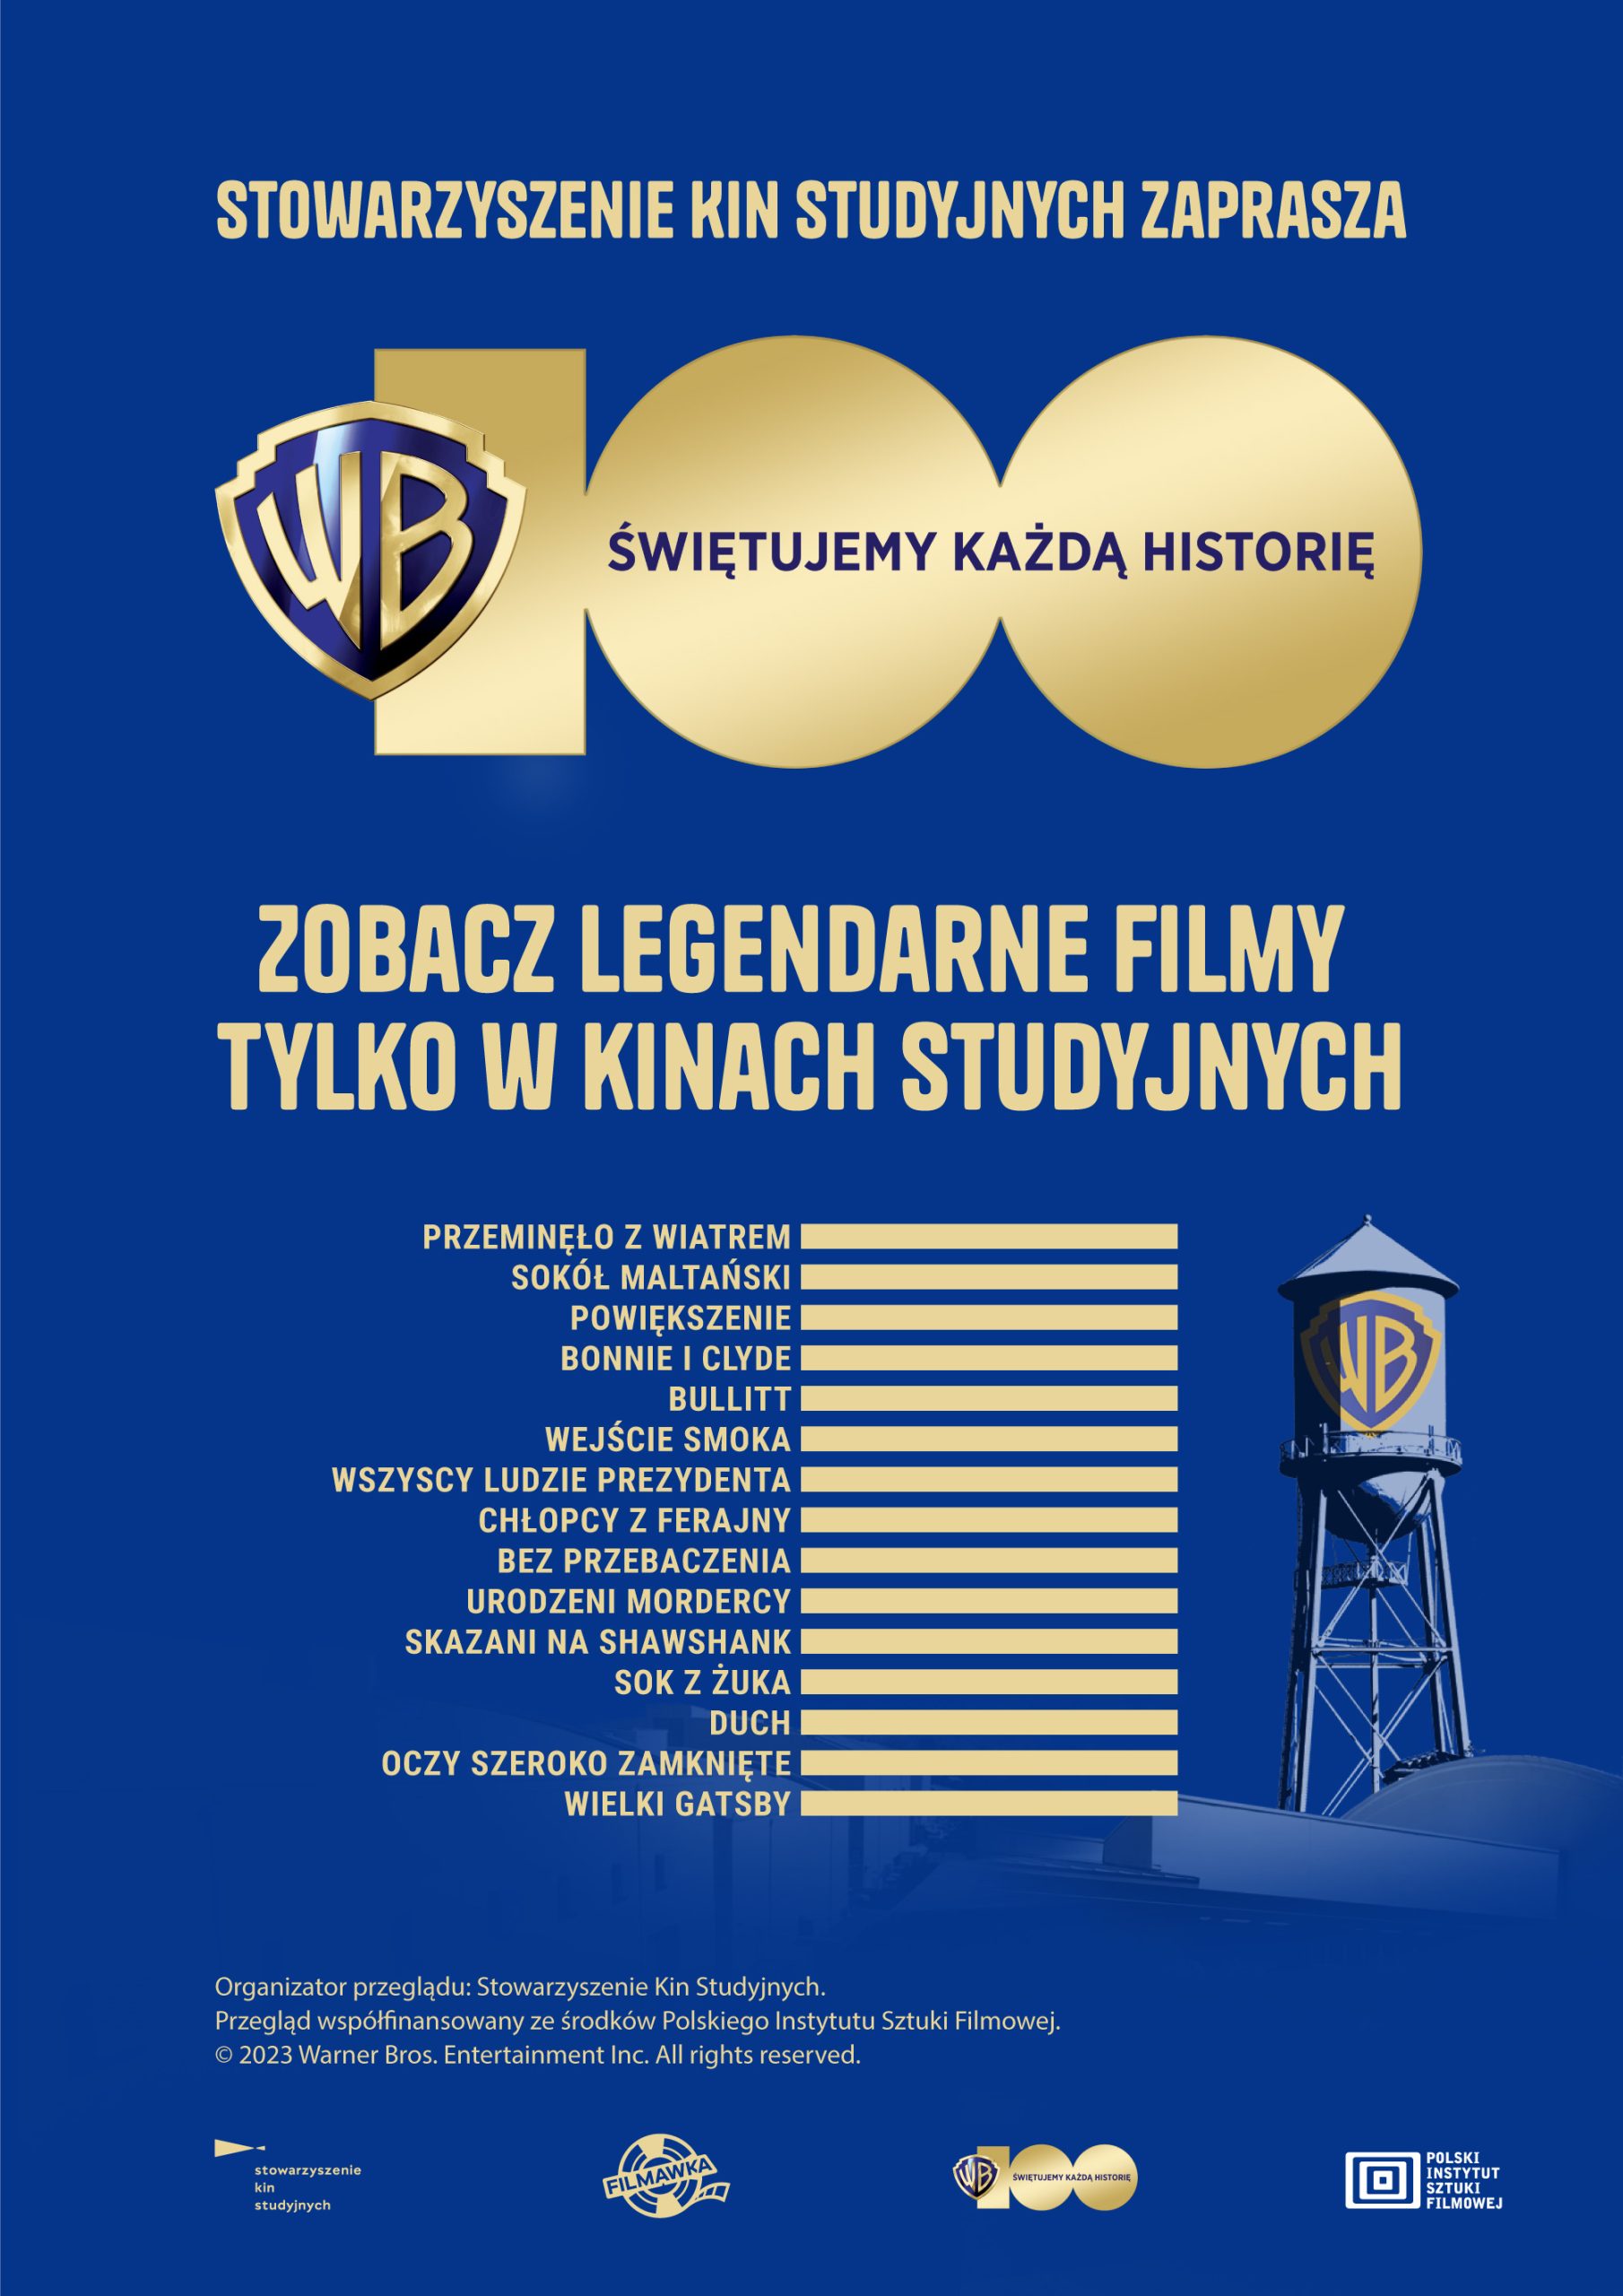 Plakat promujący 100-lecie Warner Bros. Grafika złoto-niebieska z tytułami filmów prezentowanych w ramach cyklu.